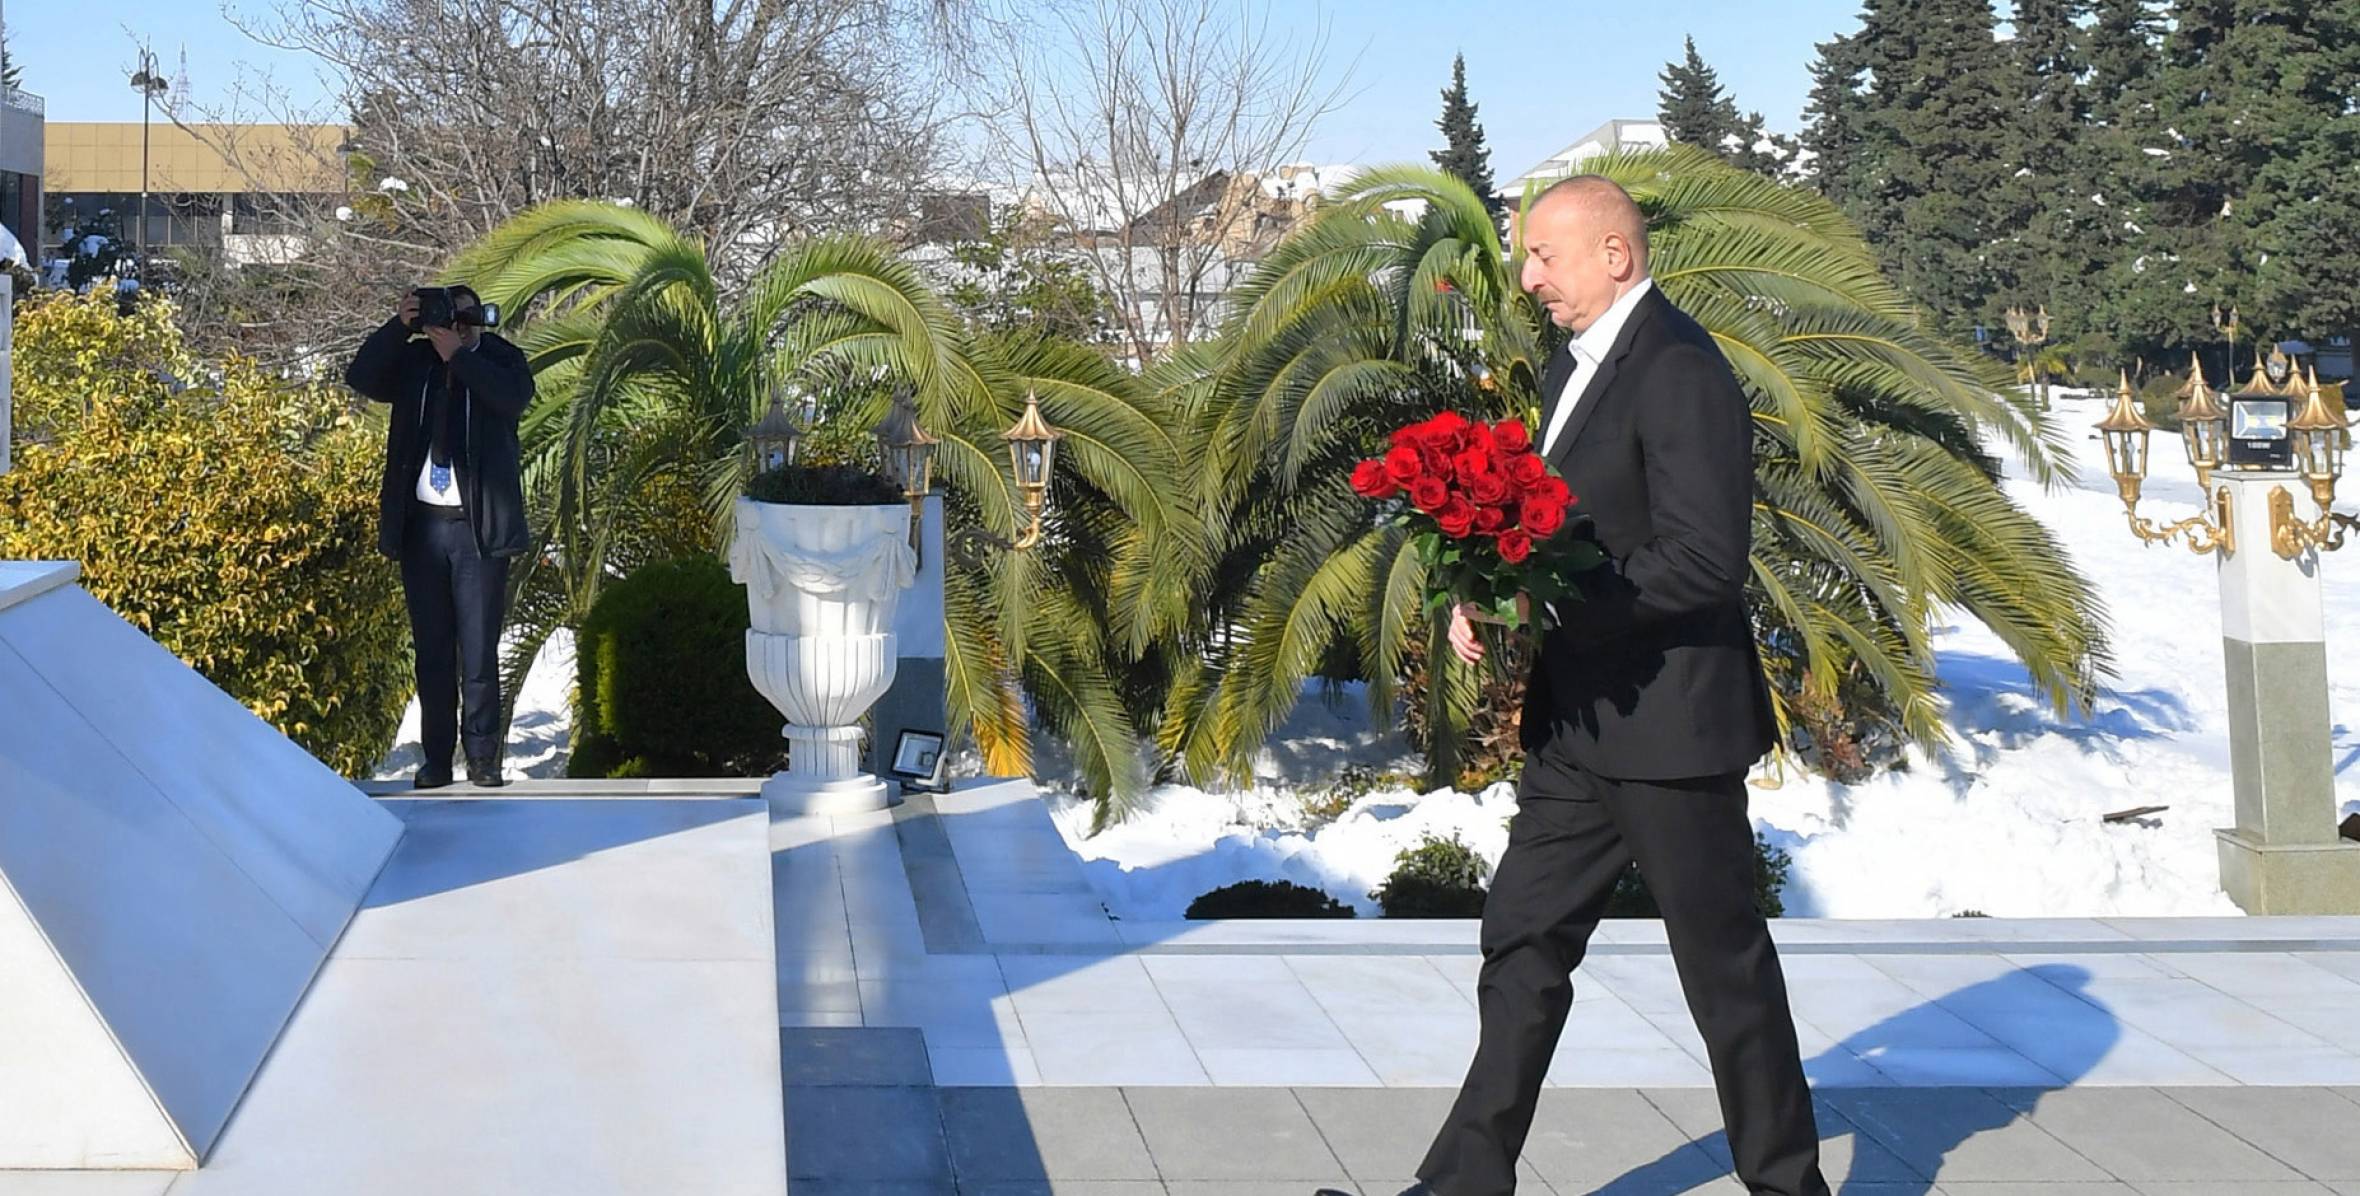 Ilham Aliyev visited statue of National Leader Heydar Aliyev in the city of Lankaran